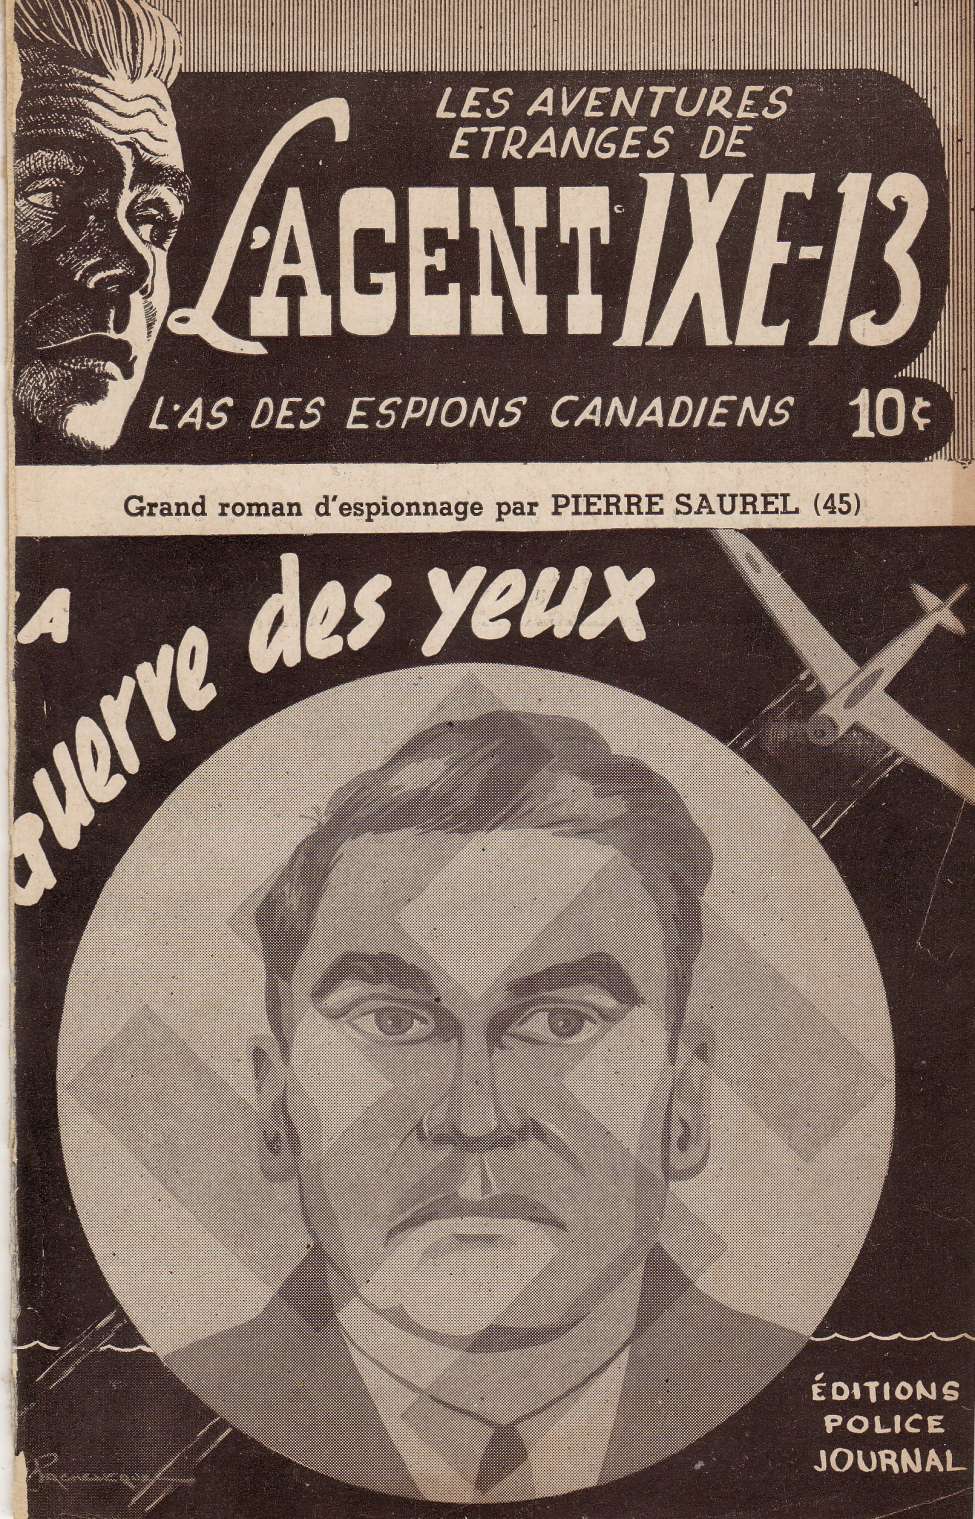 Book Cover For L'Agent IXE-13 v2 45 - La guerre des yeux